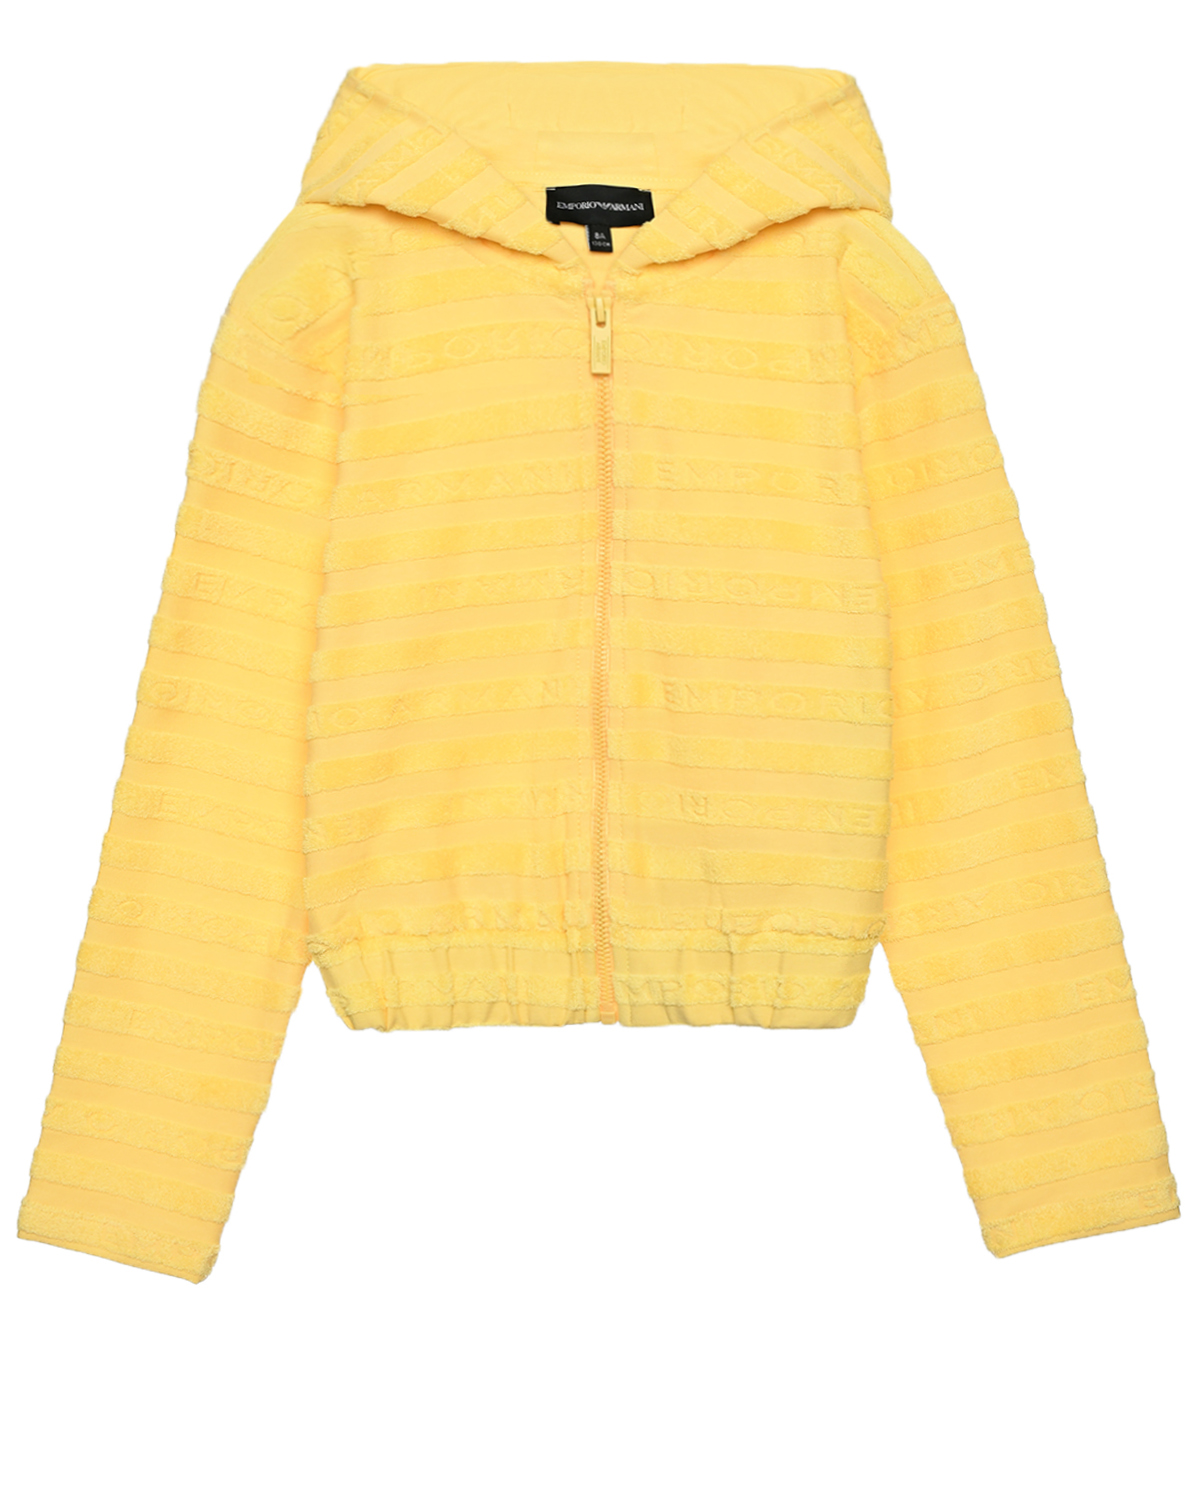 Куртка спортивная с капюшоном в махровую полоску, желтая Emporio Armani, размер 152, цвет желтый